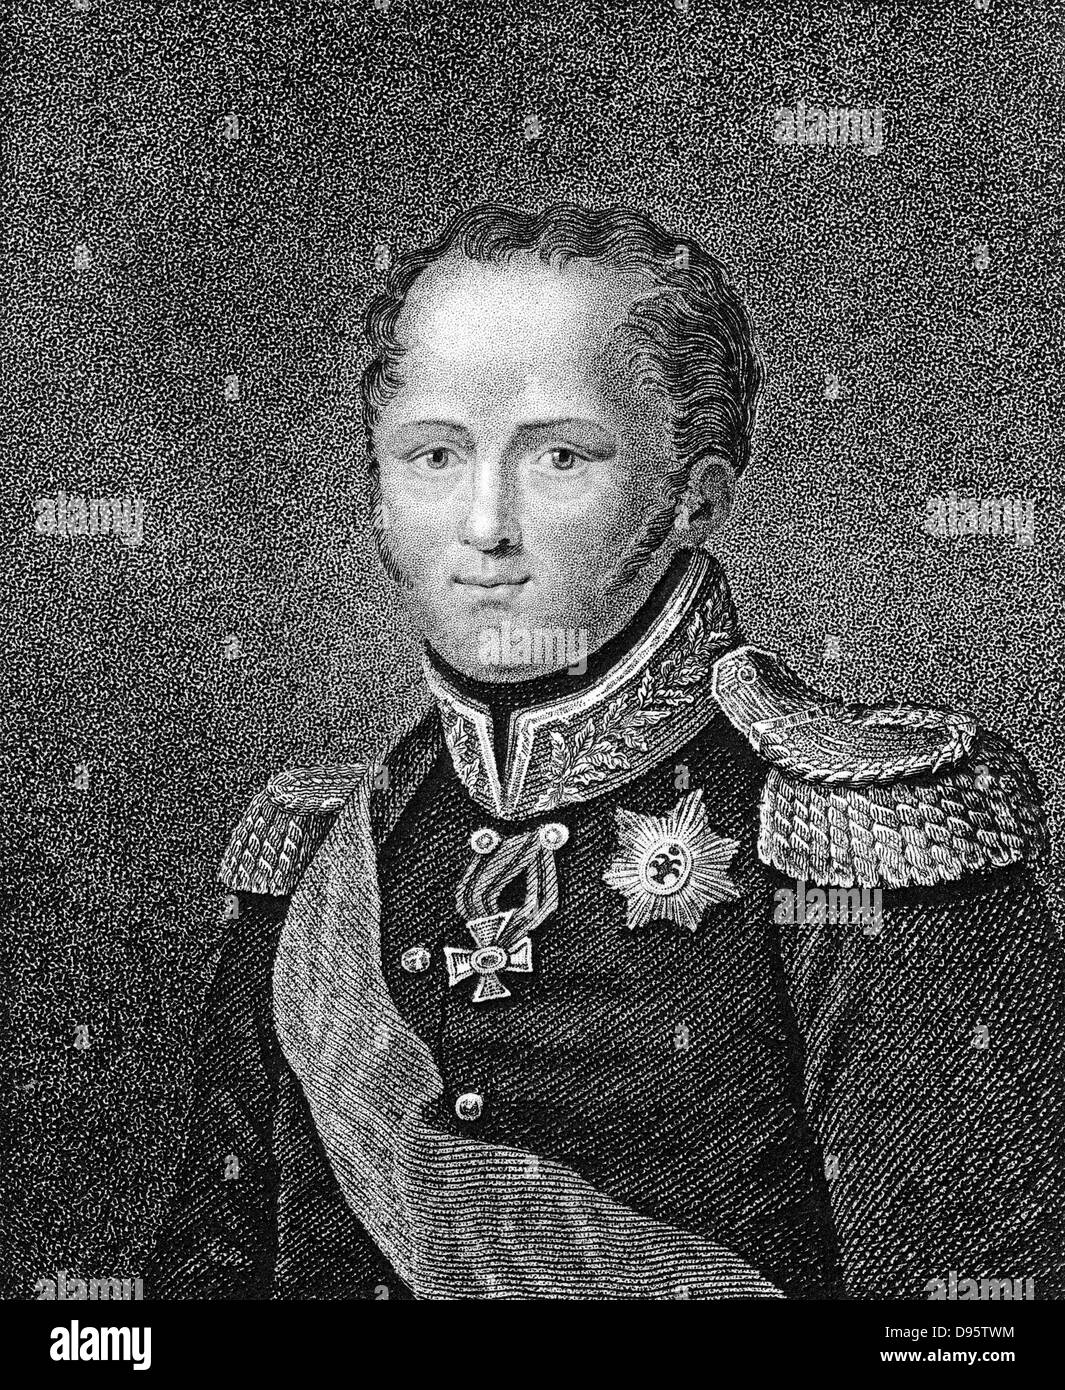 Alexander ich (1777-1825) Zar von Russland von 1801. Stupfen Sie Gravur von einer Miniatur. Veröffentlichten London 1817. Stockfoto